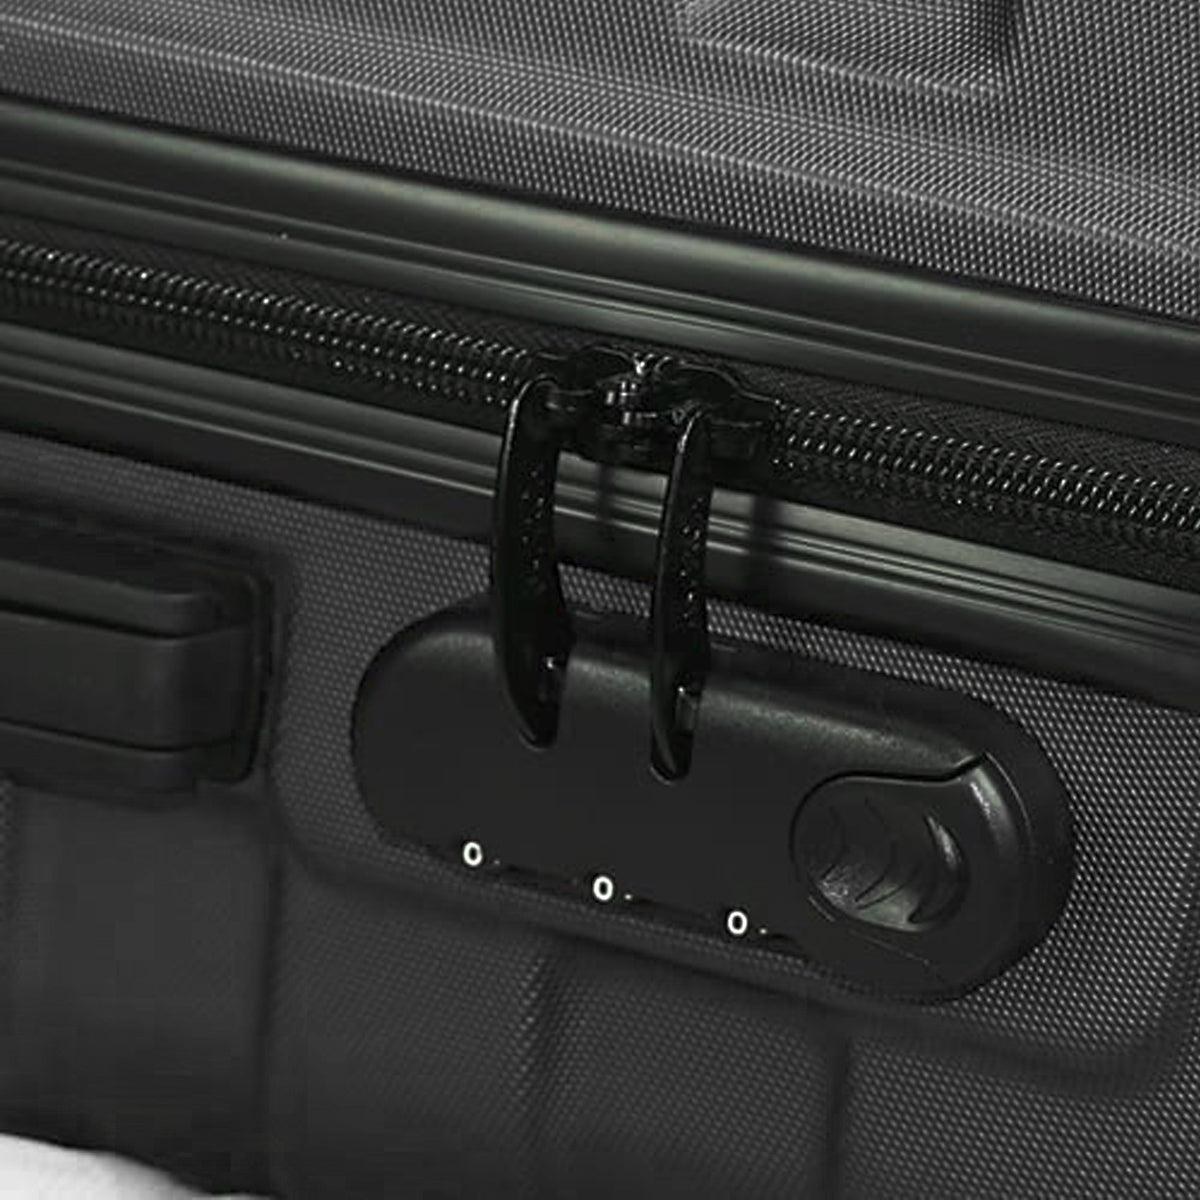 Hipack Prime Hardside 3-Piece Spinner Luggage Set